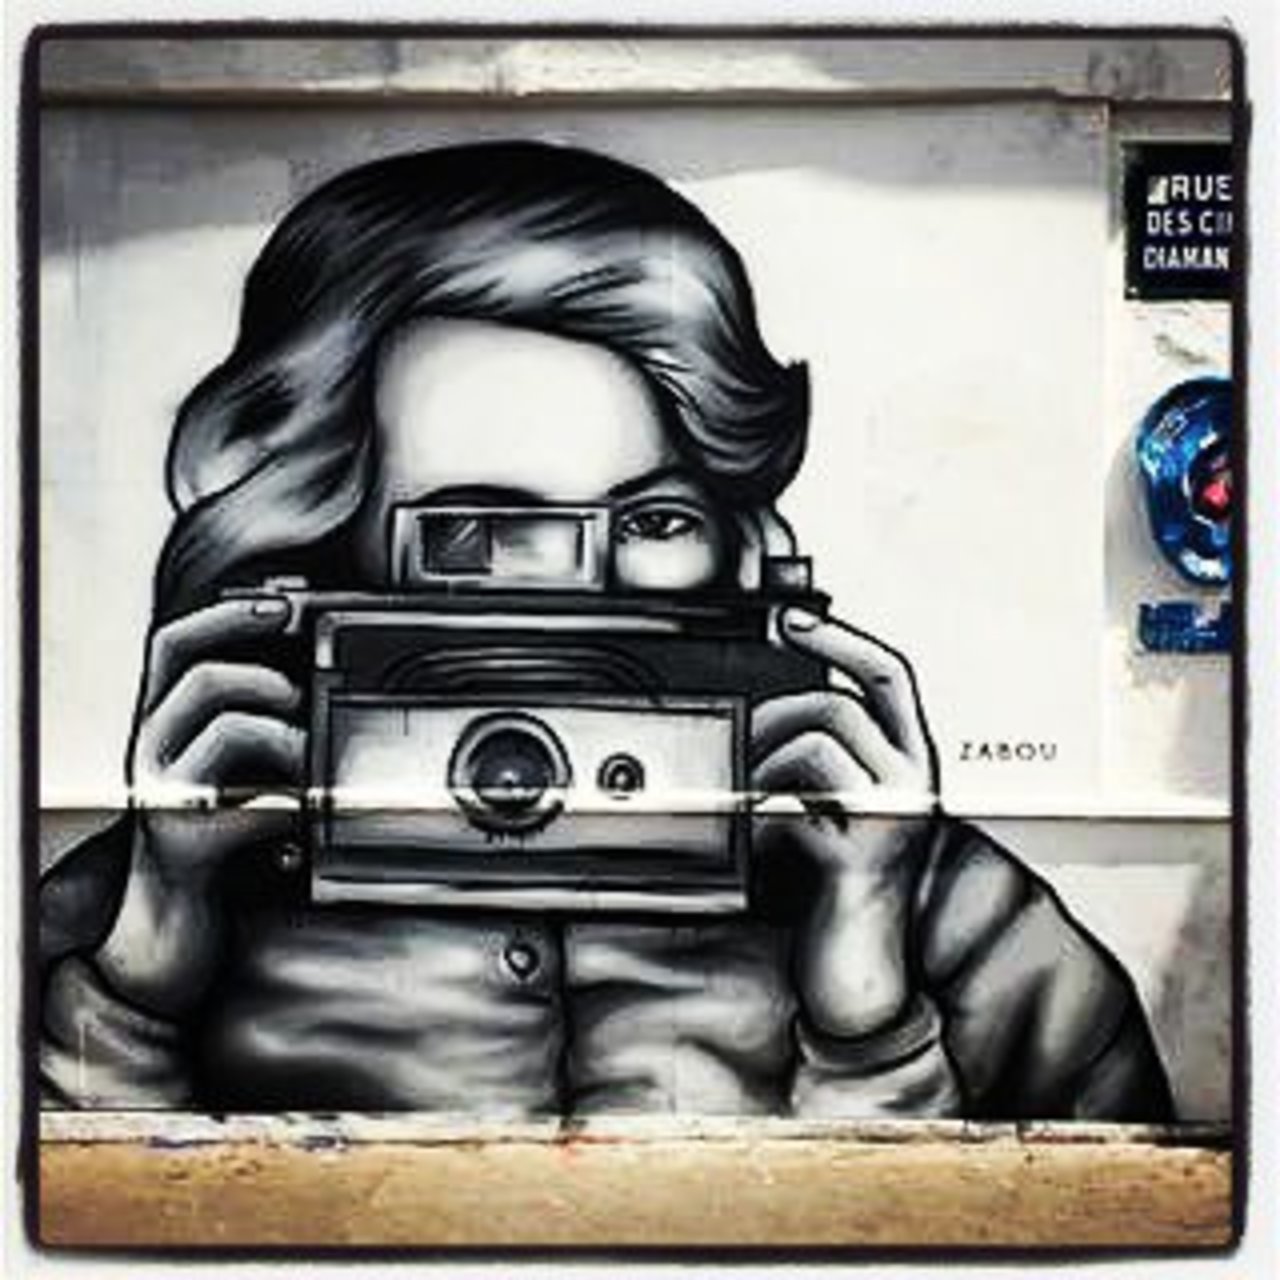 #zabouartist #streetart #art #graffiti #wallart #urbanart #zabou #londonstreetart #paris #streetartlondon #streetar… https://t.co/At1tIaARwb